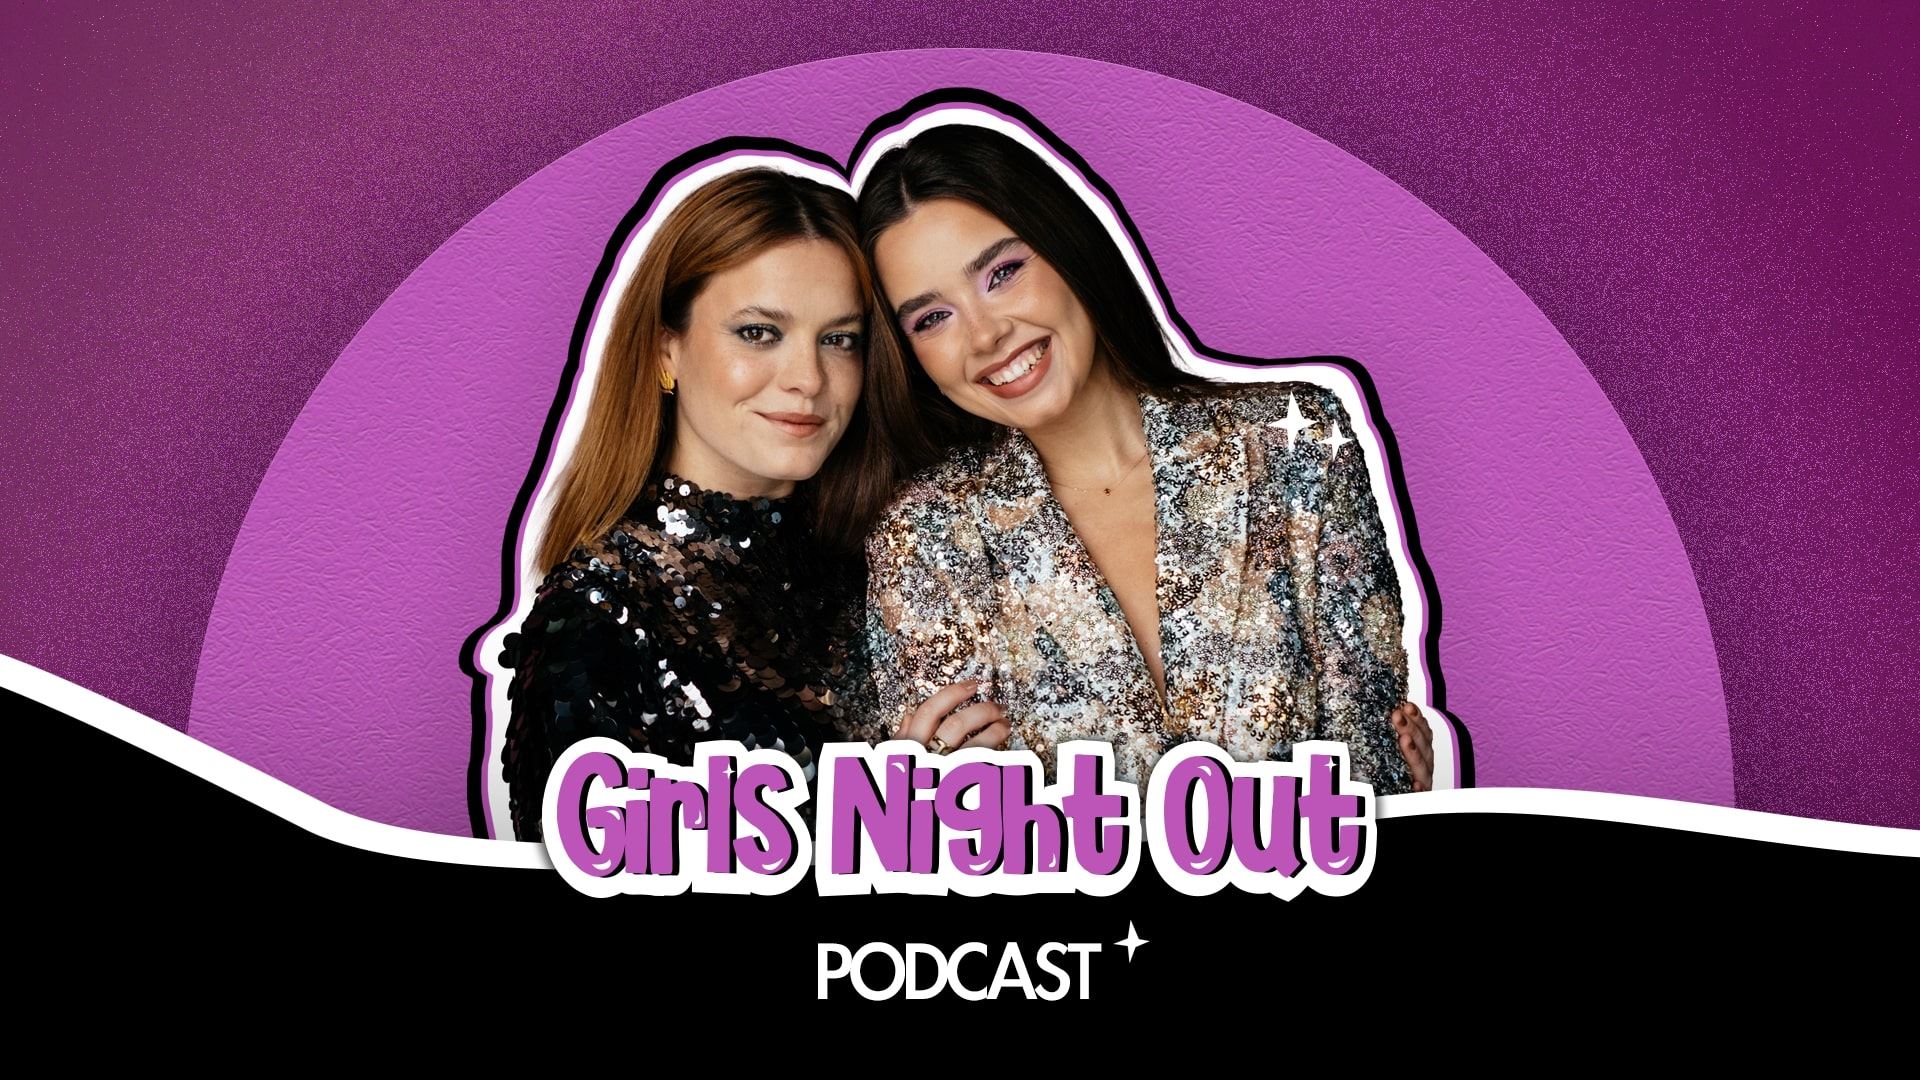 Girls Night Out Podcast#7 | 5 coisas que ninguém sabe sobre a Catarina Maia